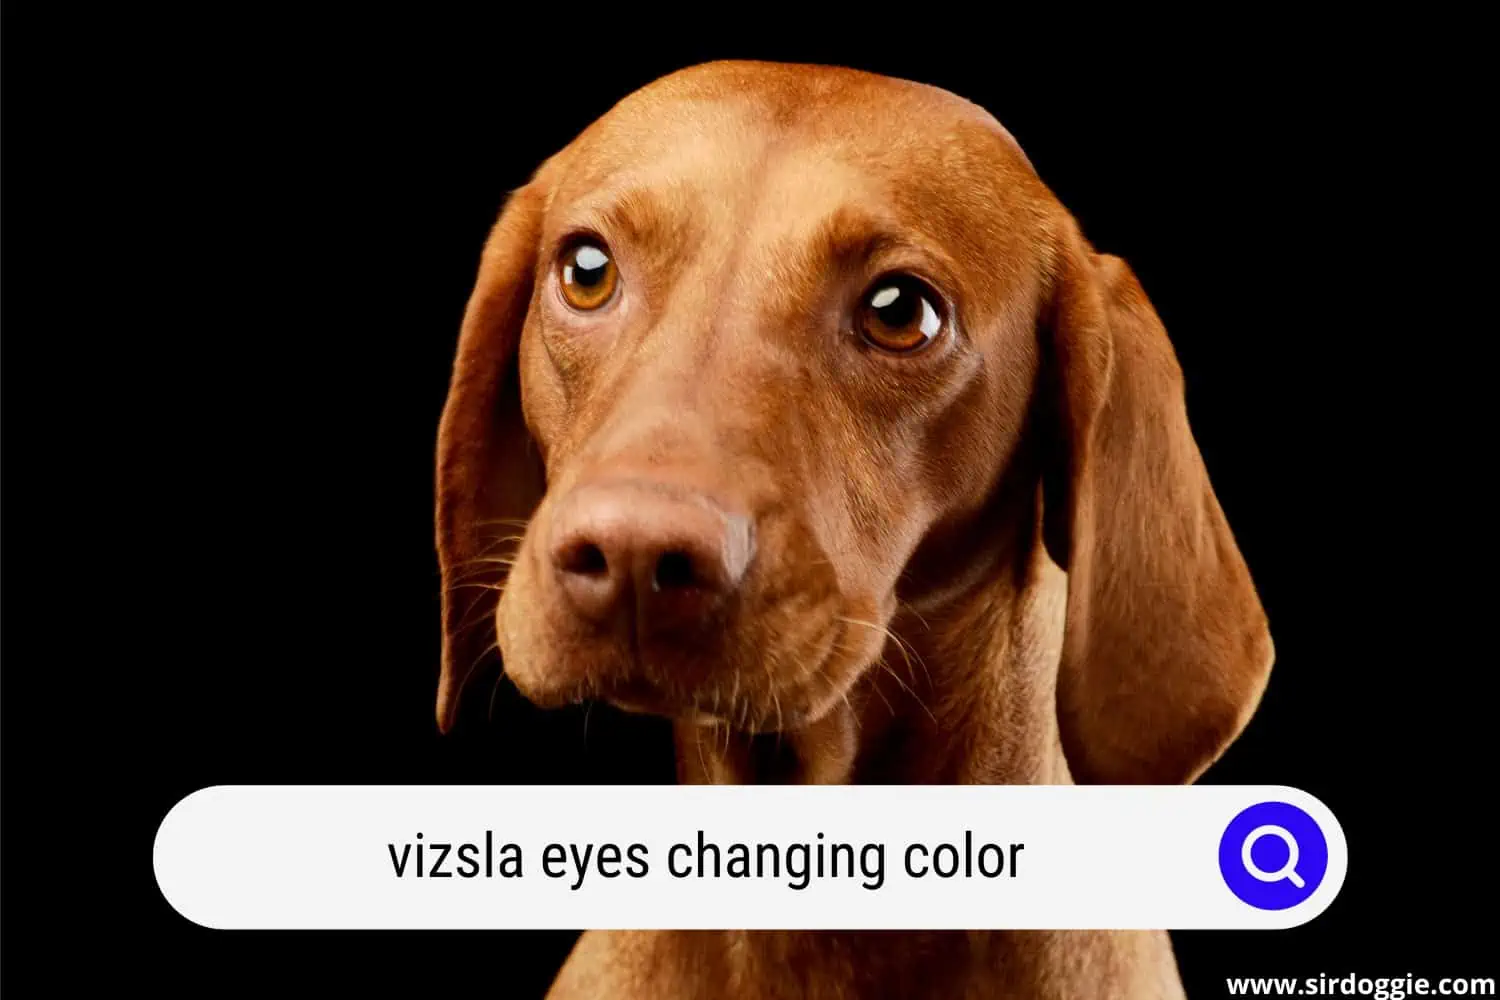 Vizsla dog with tantalizing eyes